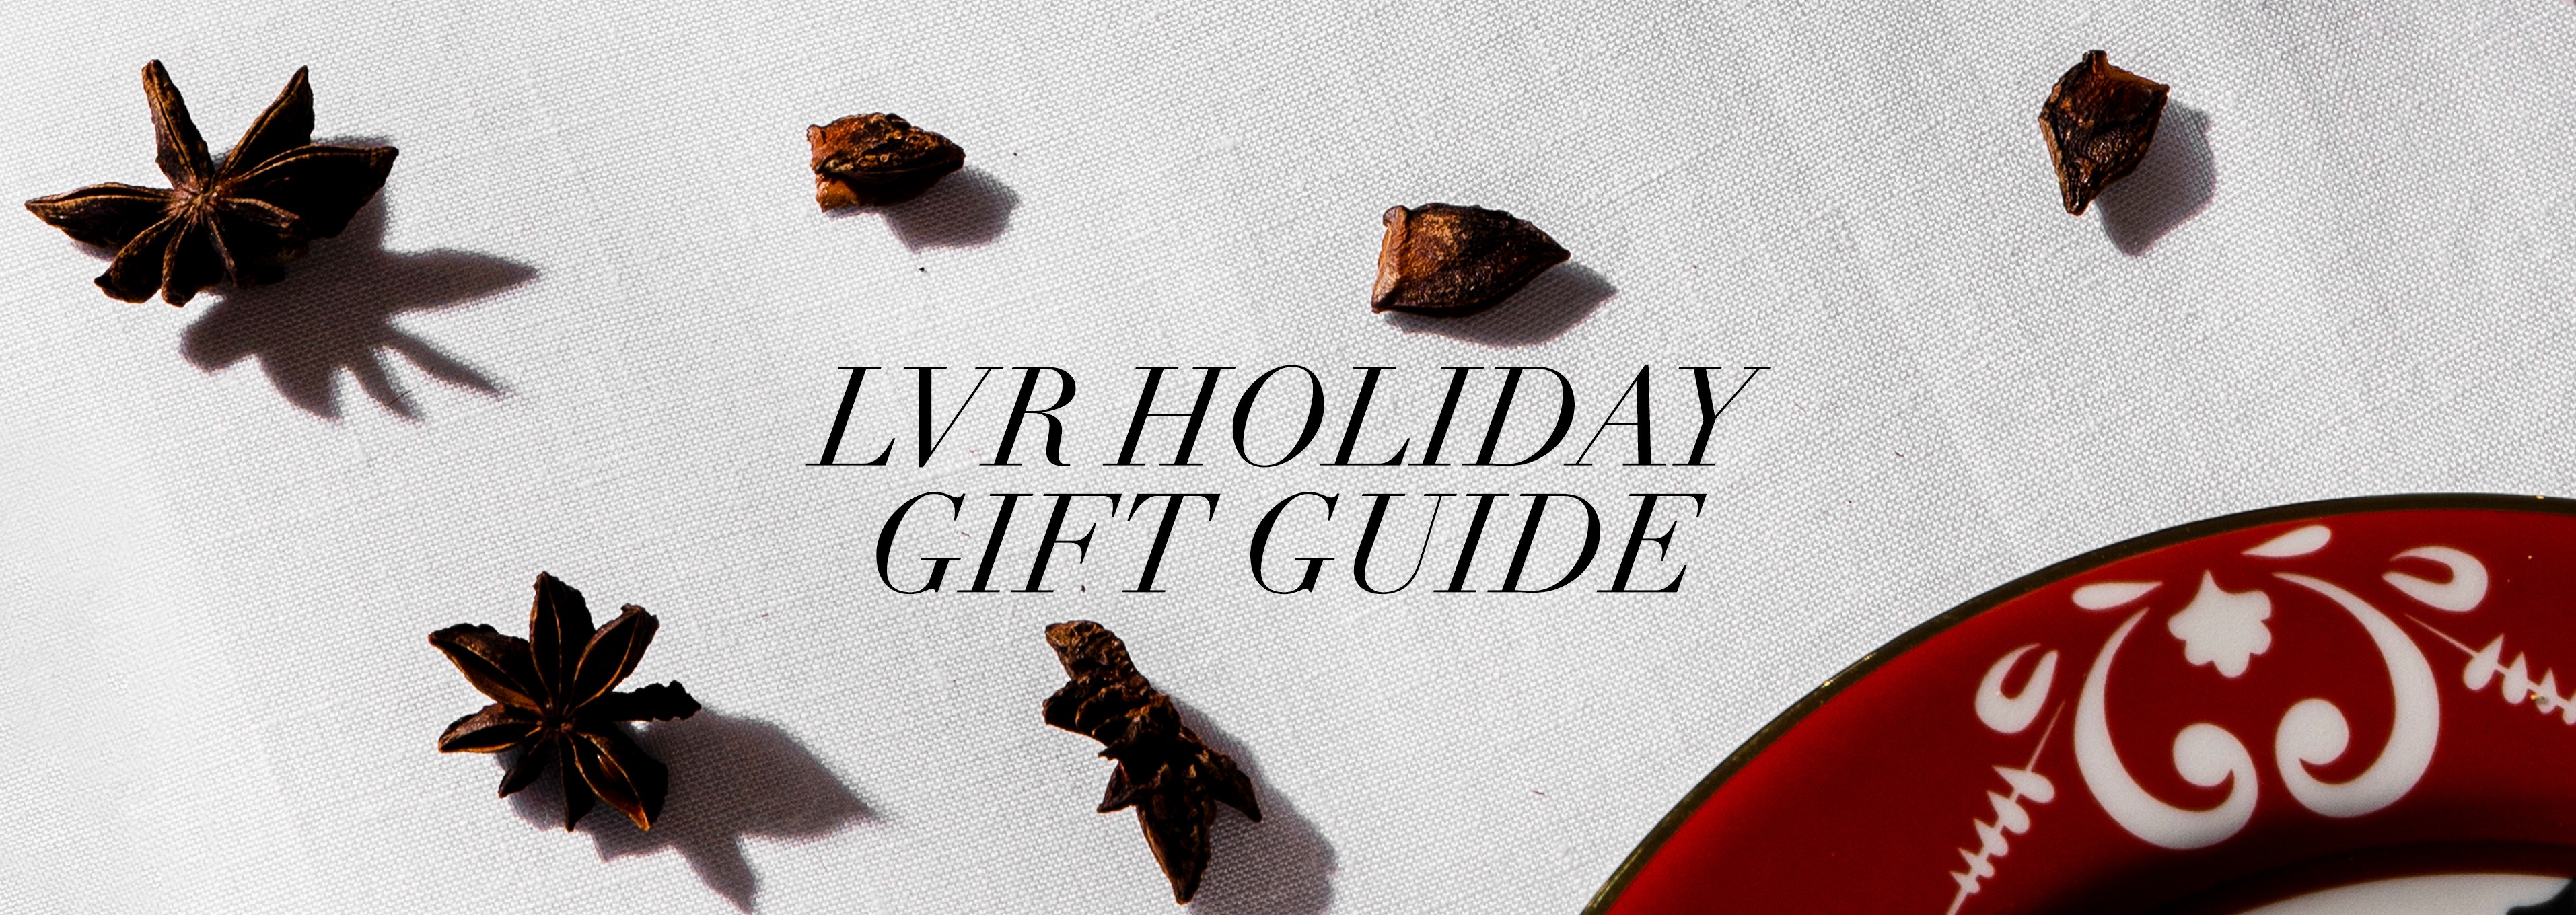 The Holidays Gift Guide 2021: idee regalo per uomo e donna